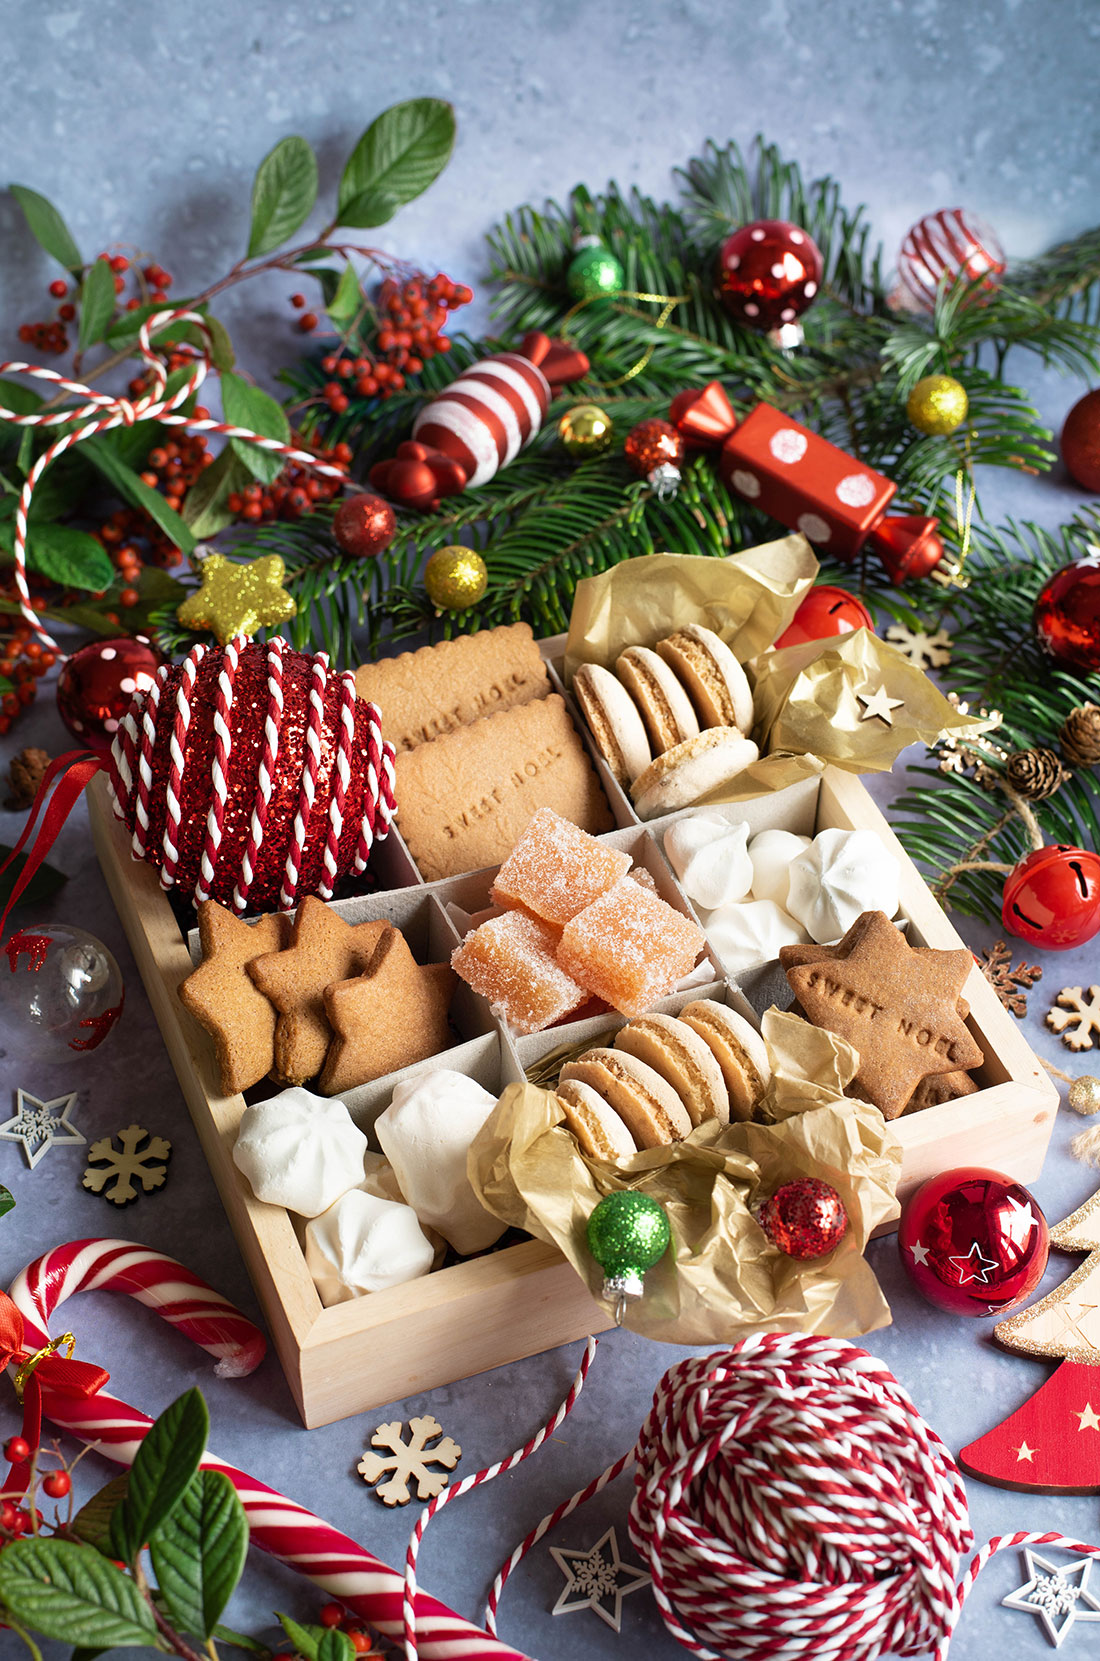 Boite de bredele, des biscuits parfaits à offrir à Noël